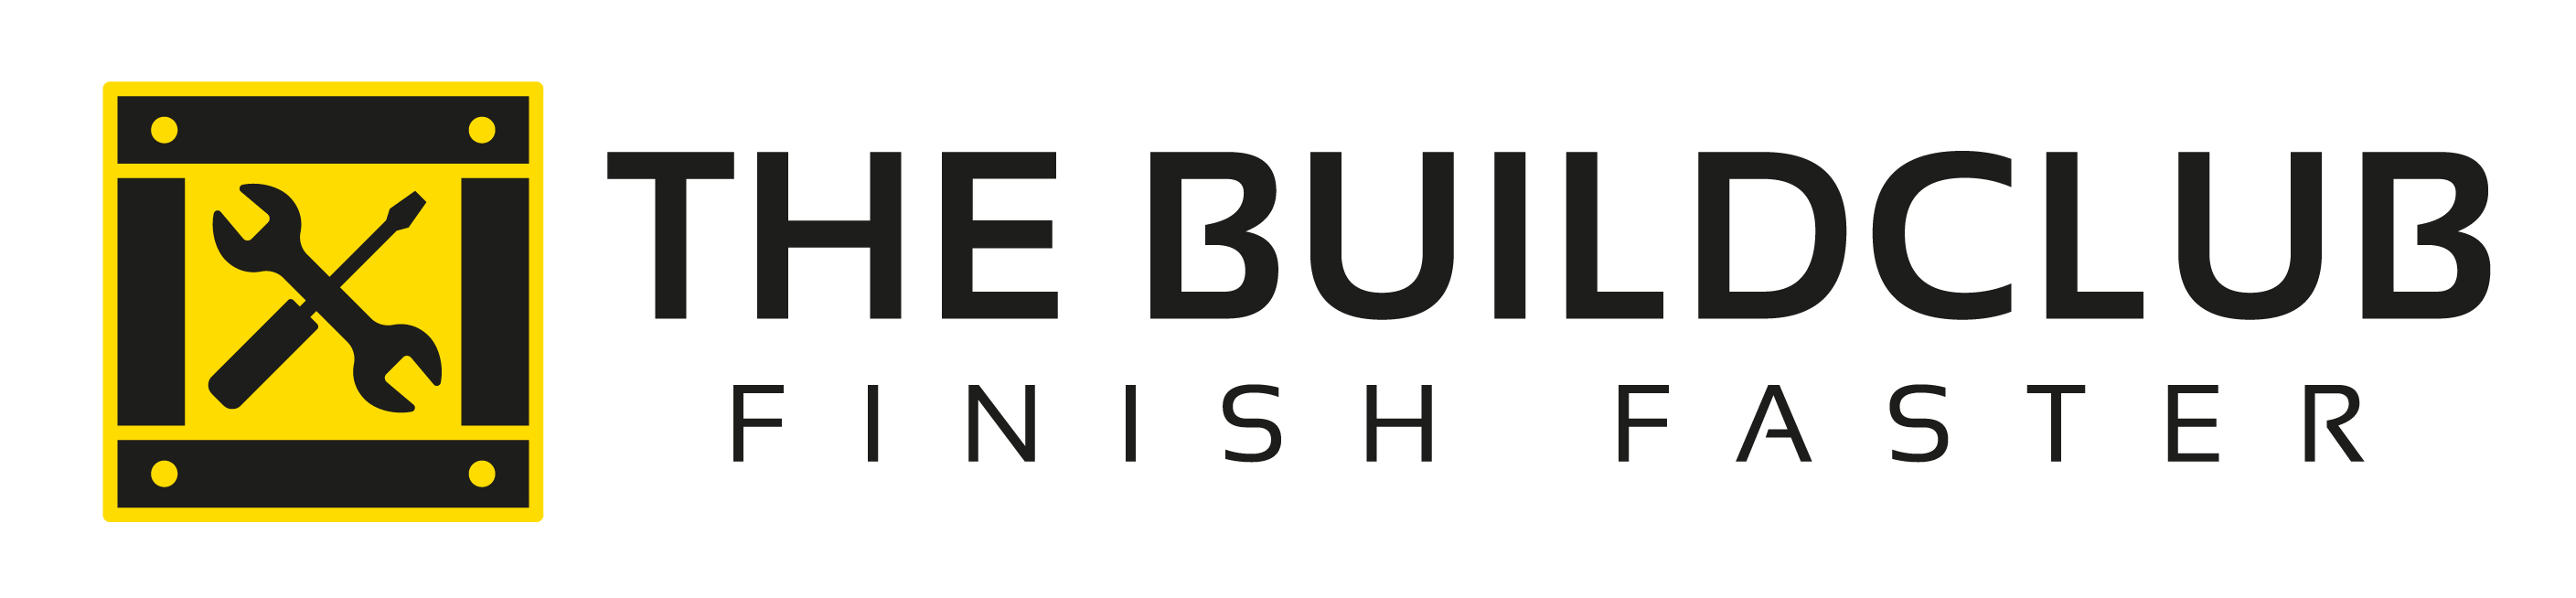 TBC Logo.jpg